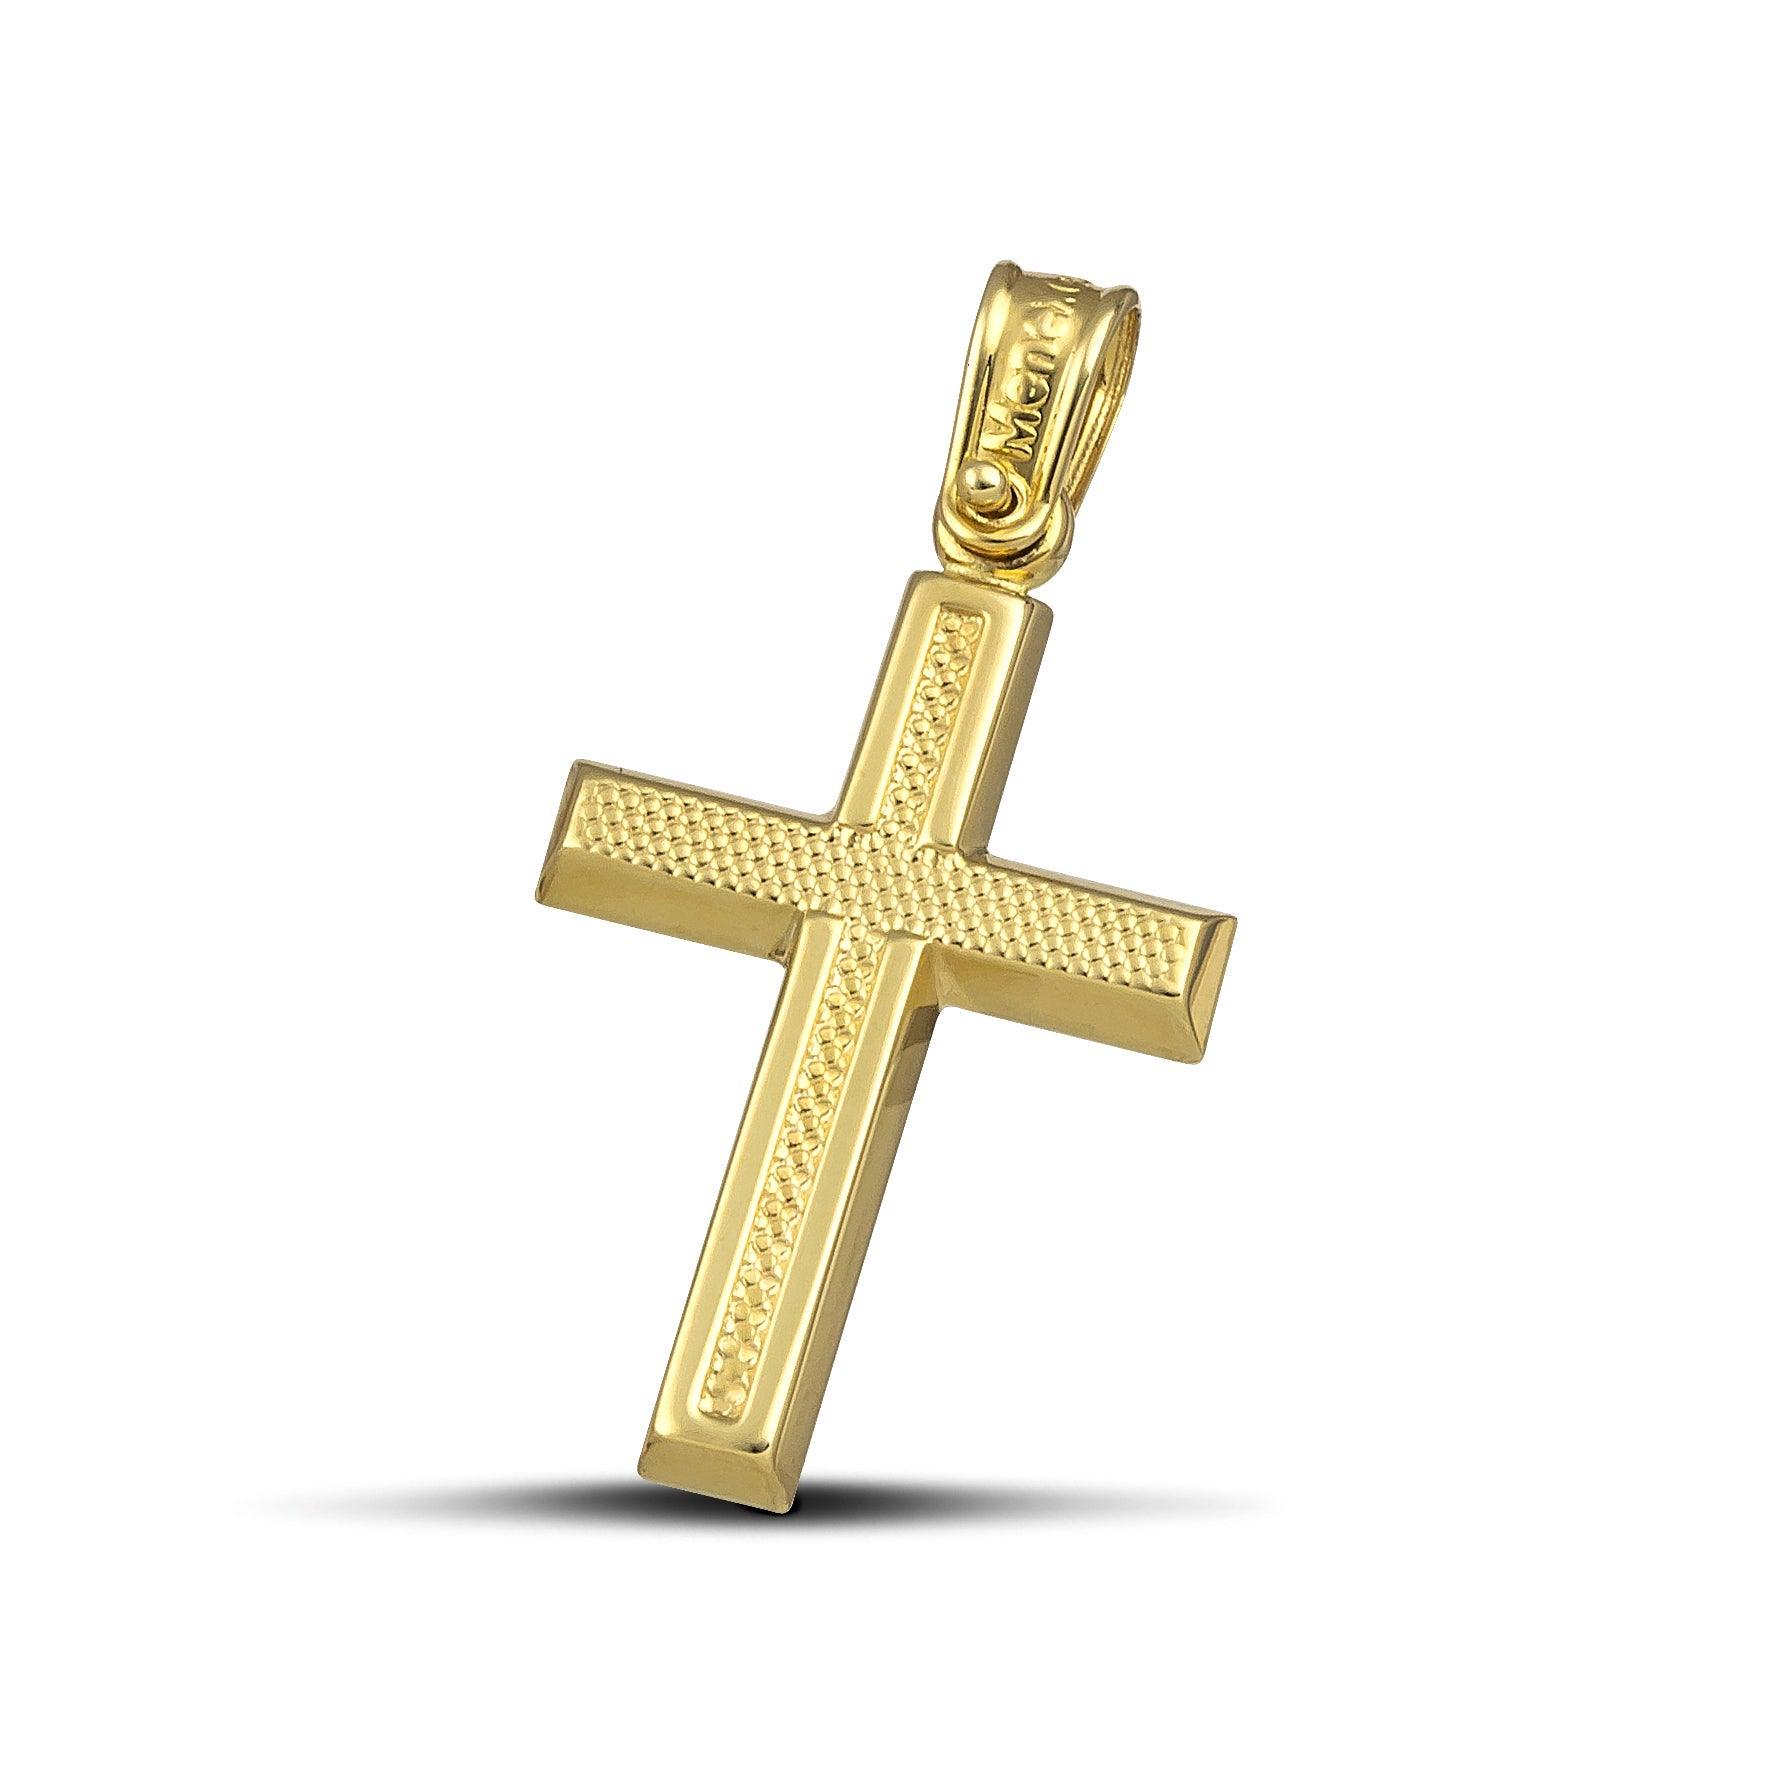 Μοντέρνος σταυρός για κορίτσι από χρυσό Κ14 ανάγλυφος.